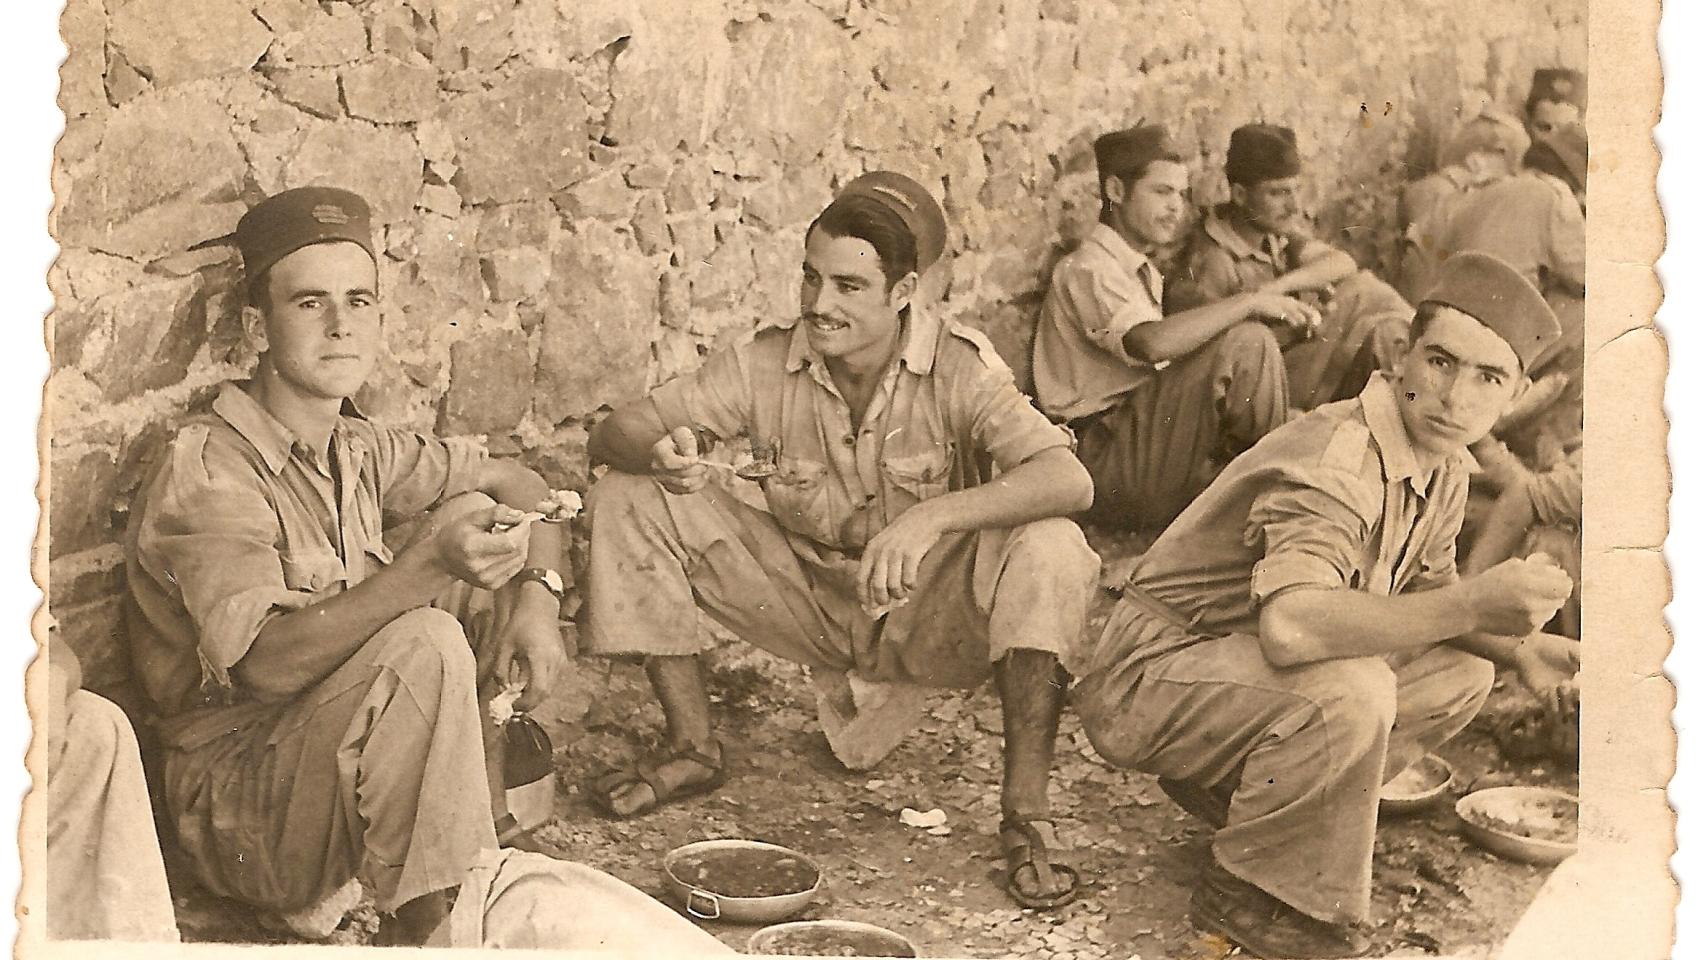 Ángel, en el centro, comiendo junto a sus compañeros en Ifni.